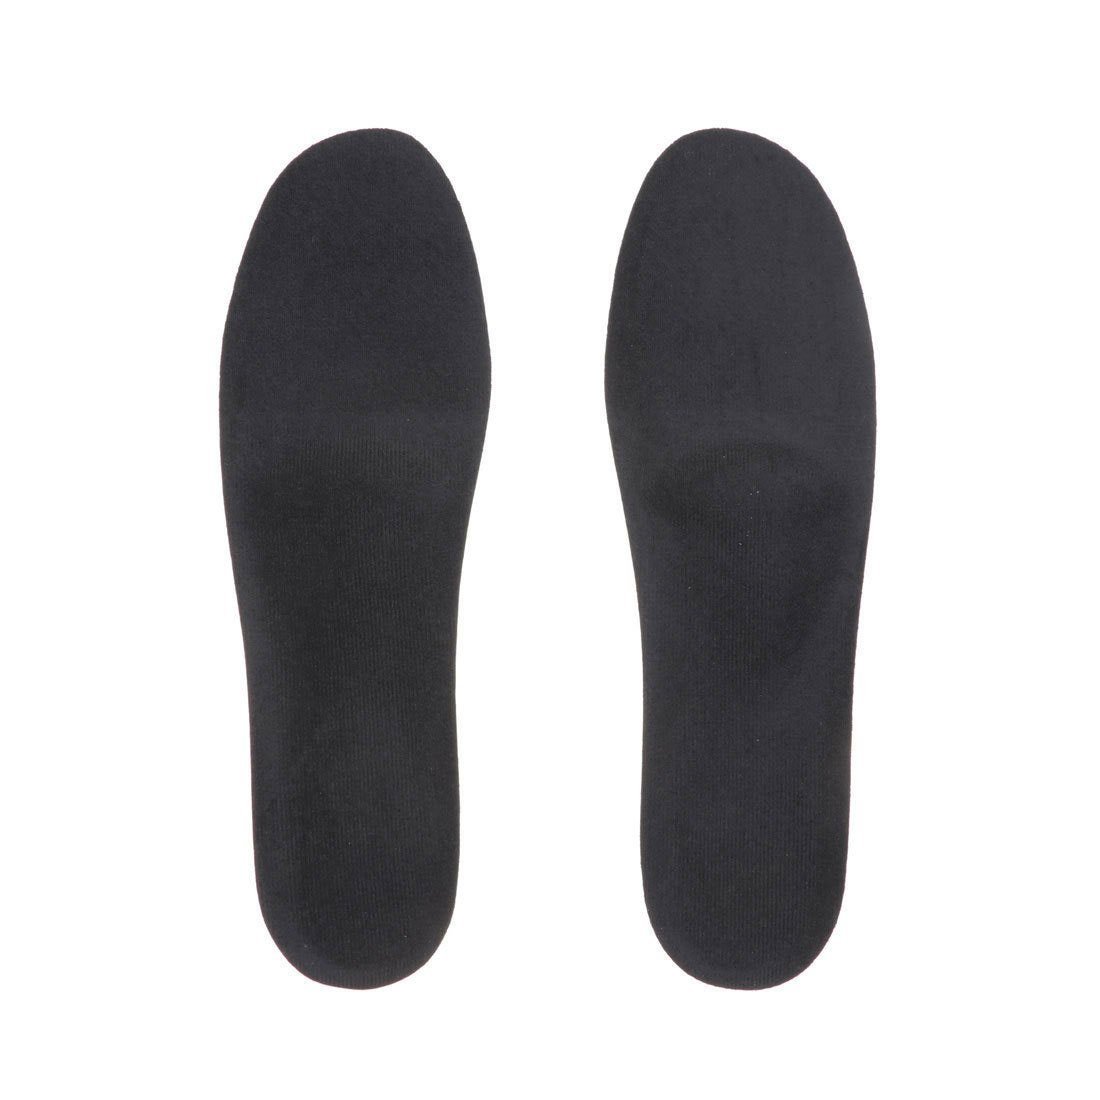 EVOL（イーボル）フットソリューションサイズフィッターインソール立体形状が足裏の縦・横アーチを理想的に保持して外反母趾予防に役立ちます。カップ型形状が足をしっかり安定させます。消臭剤を配合しましたので靴の中の嫌なニオイを抑えます。洗濯はできません。足に痛みを感じたら、すぐに使用を中止してください。※インソールは標準的な形に作られていますが、靴によっては横幅が合わない場合があります。※パッケージがリニューアルにより画像と異なる場合がございます。型番：000-54-NN-L JU7105【採寸】商品のサイズについて【商品詳細】中国サイズ：L、M、S※画面上と実物では多少色具合が異なって見える場合もございます。ご了承ください。商品のカラーについて 【予約商品について】 ※「先行予約販売中」「予約販売中」をご注文の際は予約商品についてをご確認ください。EVOL（イーボル）フットソリューションサイズフィッターインソール立体形状が足裏の縦・横アーチを理想的に保持して外反母趾予防に役立ちます。カップ型形状が足をしっかり安定させます。消臭剤を配合しましたので靴の中の嫌なニオイを抑えます。洗濯はできません。足に痛みを感じたら、すぐに使用を中止してください。※インソールは標準的な形に作られていますが、靴によっては横幅が合わない場合があります。※パッケージがリニューアルにより画像と異なる場合がございます。型番：000-54-NN-L JU7105【採寸】商品のサイズについて【商品詳細】中国サイズ：L、M、S※画面上と実物では多少色具合が異なって見える場合もございます。ご了承ください。商品のカラーについて 【予約商品について】 ※「先行予約販売中」「予約販売中」をご注文の際は予約商品についてをご確認ください。■重要なお知らせ※ 当店では、ギフト配送サービス及びラッピングサービスを行っておりません。ご注文者様とお届け先が違う場合でも、タグ（値札）付「納品書 兼 返品連絡票」同梱の状態でお送り致しますのでご了承ください。 ラッピング・ギフト配送について※ 2点以上ご購入の場合、全ての商品が揃い次第一括でのお届けとなります。お届け予定日の異なる商品をお買い上げの場合はご注意下さい。お急ぎの商品がございましたら分けてご購入いただきますようお願い致します。発送について ※ 買い物カートに入れるだけでは在庫確保されませんのでお早めに購入手続きをしてください。当店では在庫を複数サイトで共有しているため、同時にご注文があった場合、売切れとなってしまう事がございます。お手数ですが、ご注文後に当店からお送りする「ご注文内容の確認メール」をご確認ください。ご注文の確定について ※ Rakuten Fashionの商品ページに記載しているメーカー希望小売価格は、楽天市場「商品価格ナビ」に登録されている価格に準じています。 商品の価格についてEVOLEVOLのシューケア用品・シューズ小物シューズ・靴ご注文・お届けについて発送ガイドラッピンググッズ3,980円以上送料無料ご利用ガイド